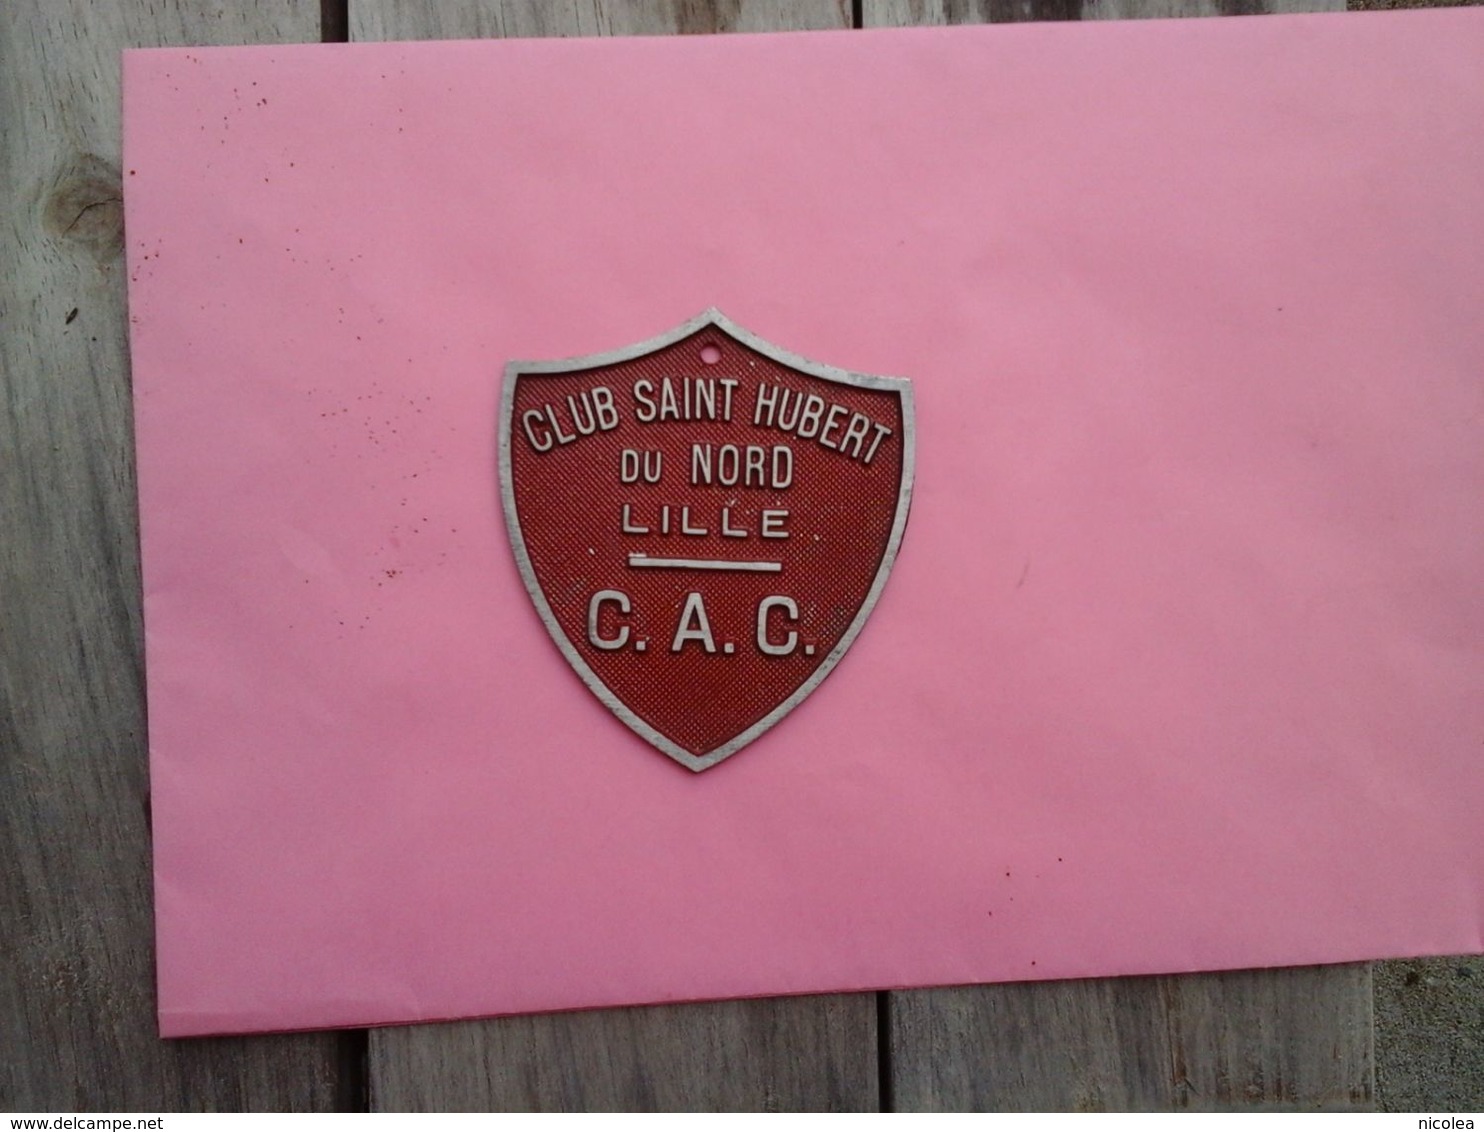 Chasse - CLUB SAINT HUBERT DU NORD - C.A.C.  - LILLE - RARE ANCIENNE PLAQUE EN ALU FORME D'ECUSSON - Plaques De Rallye